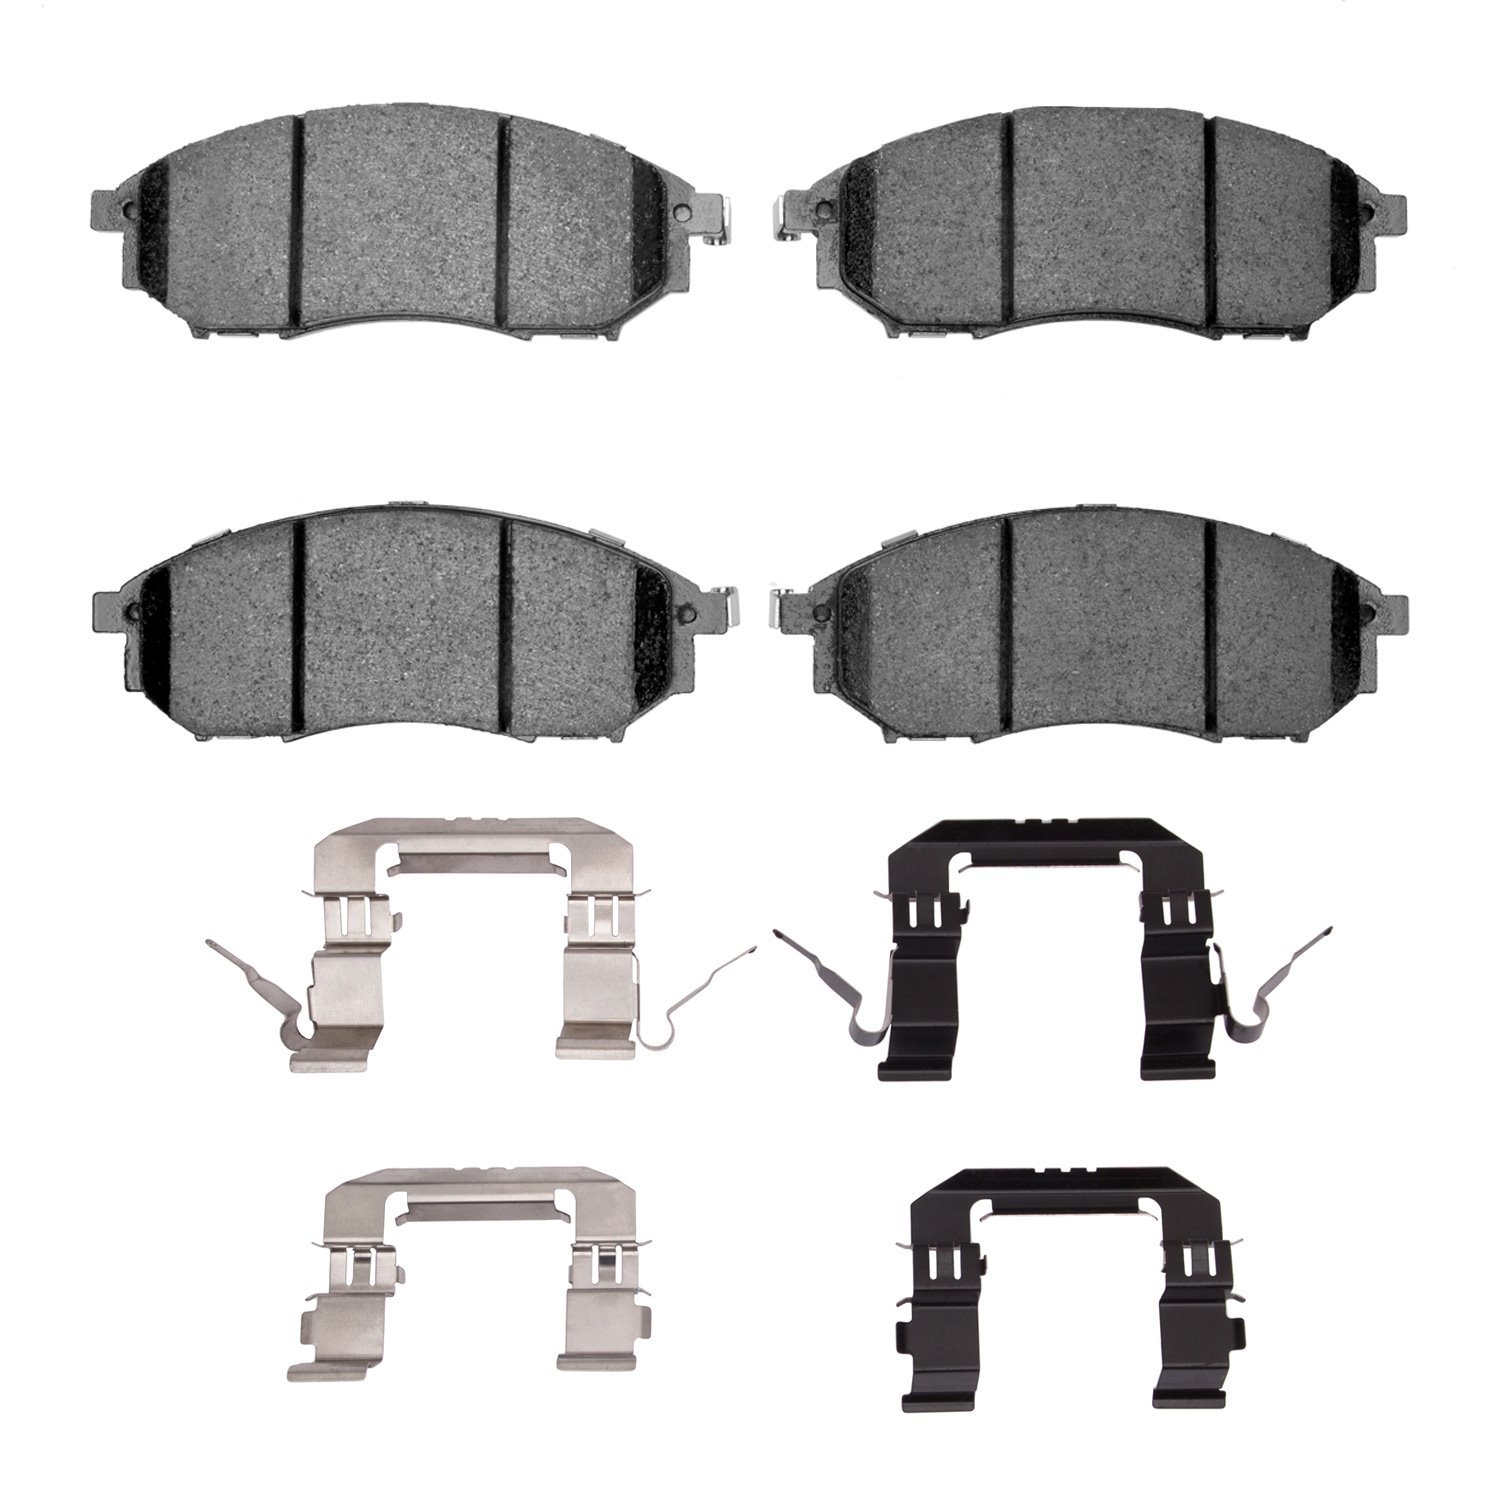 1310-0888-02 3000-Series Ceramic Brake Pads & Hardware Kit, 2005-2014 Infiniti/Nissan, Position: Front